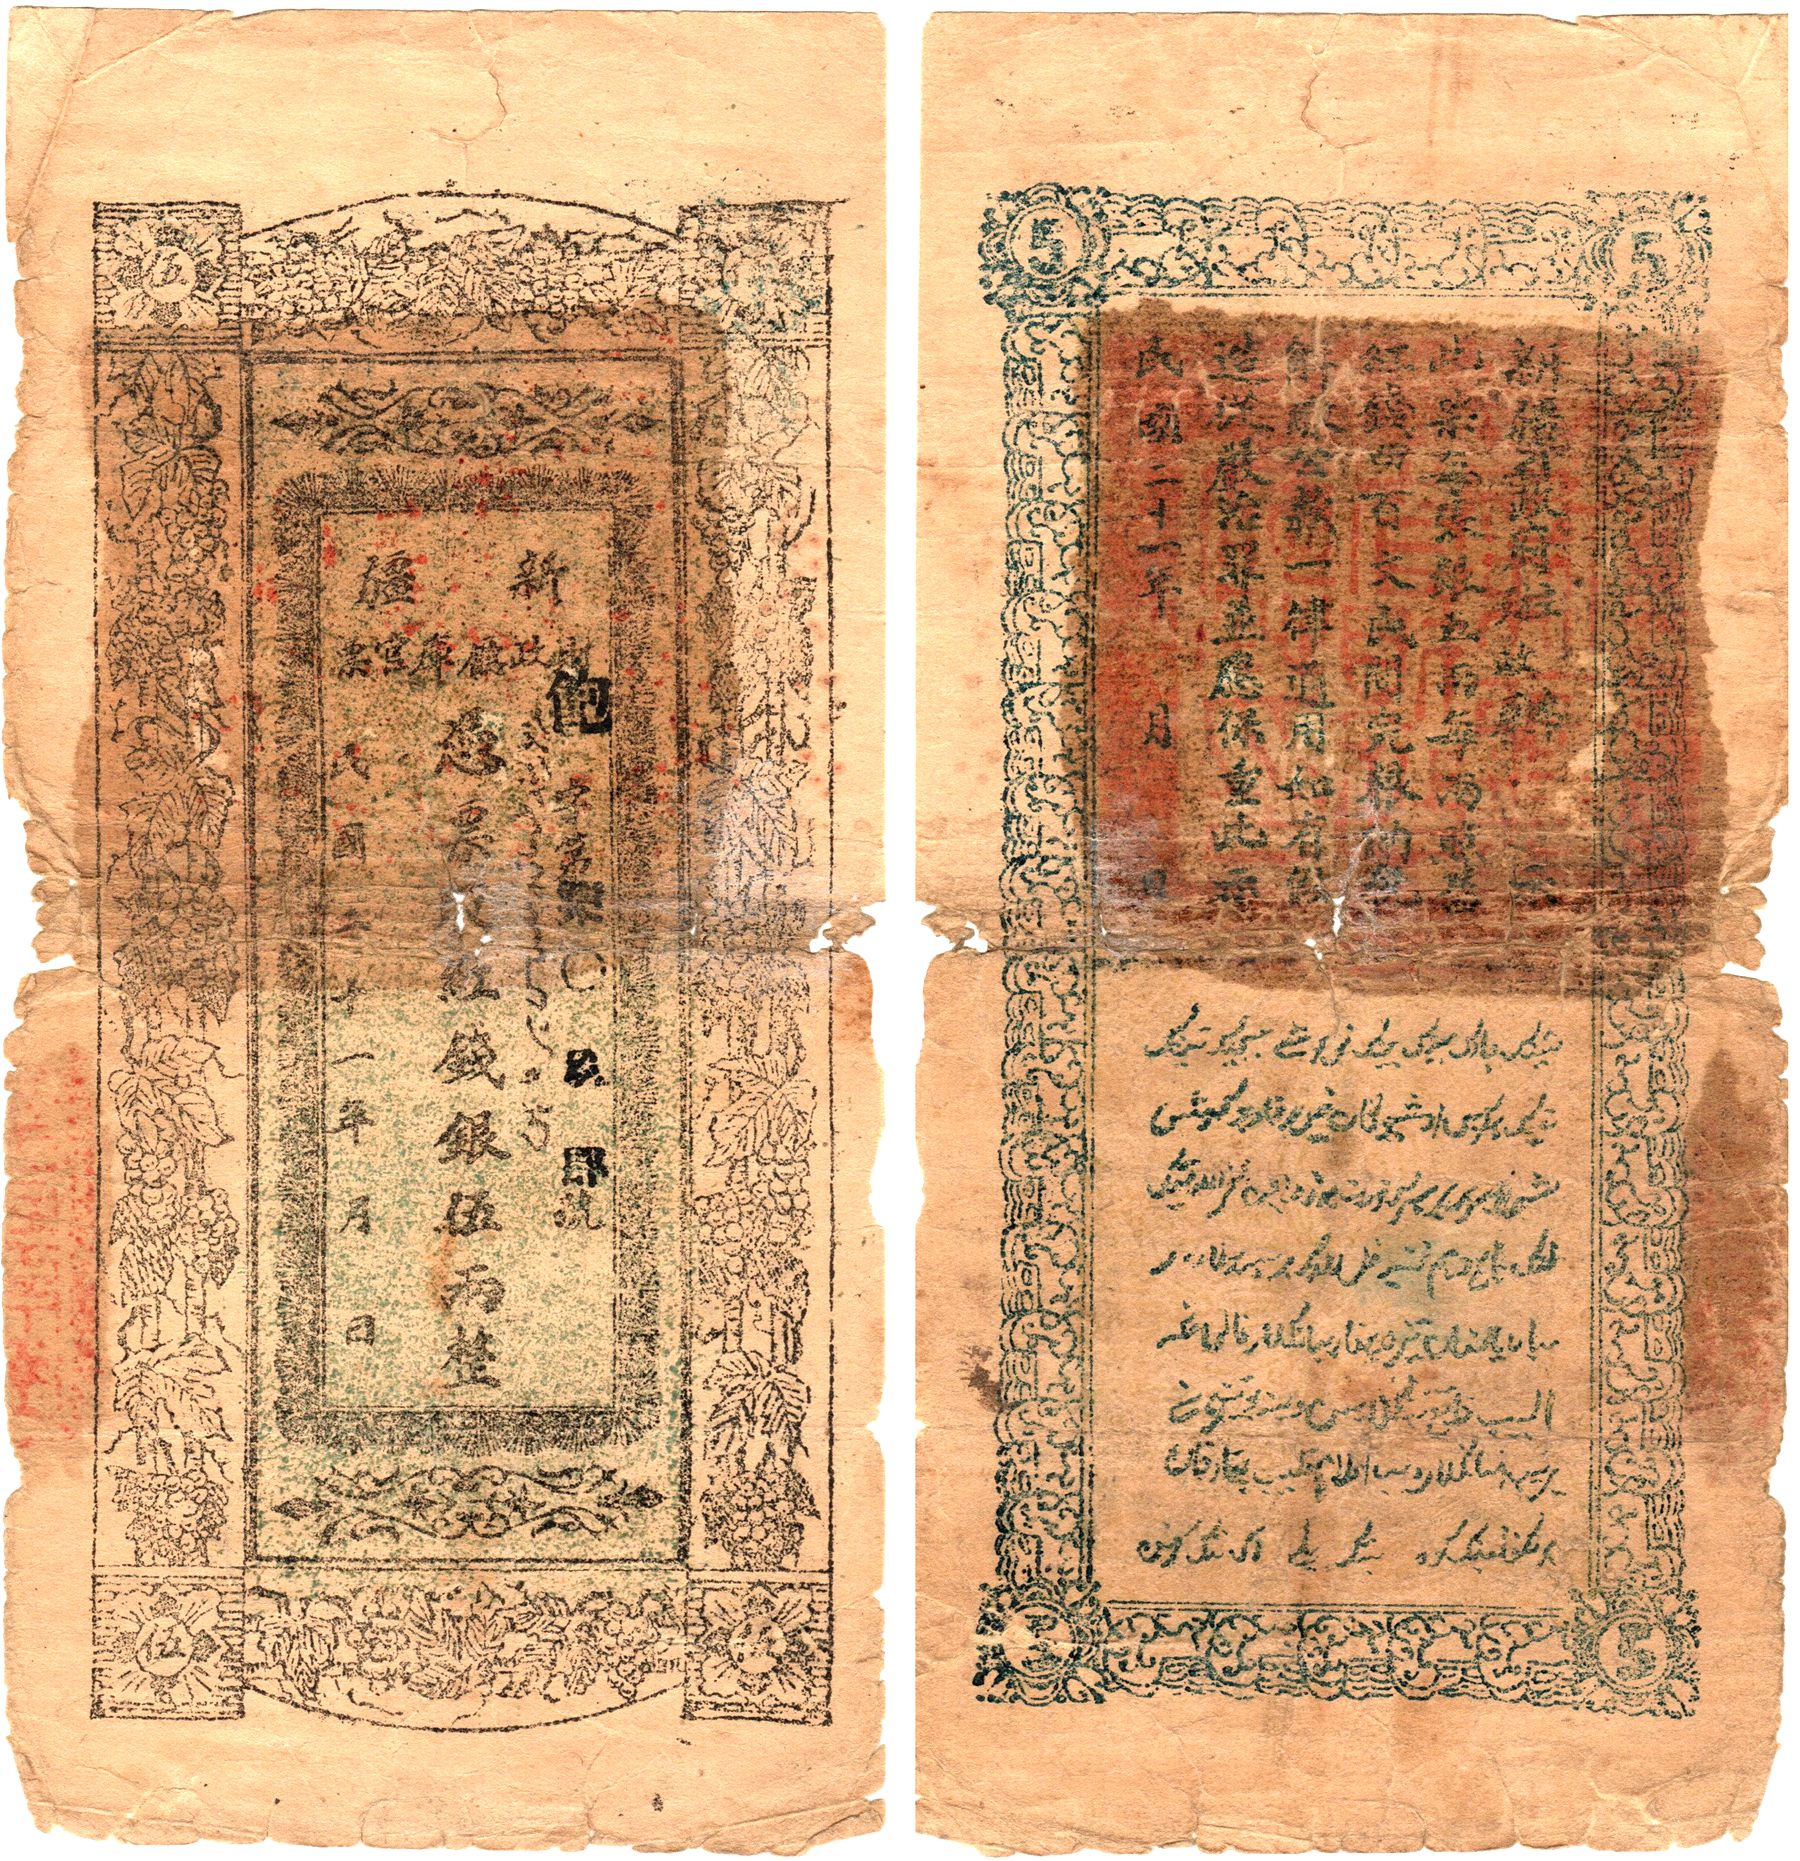 XJ0042, Sinkiang (Xinjiang) Finance Treasury Banknote, 5 Taels, 1932